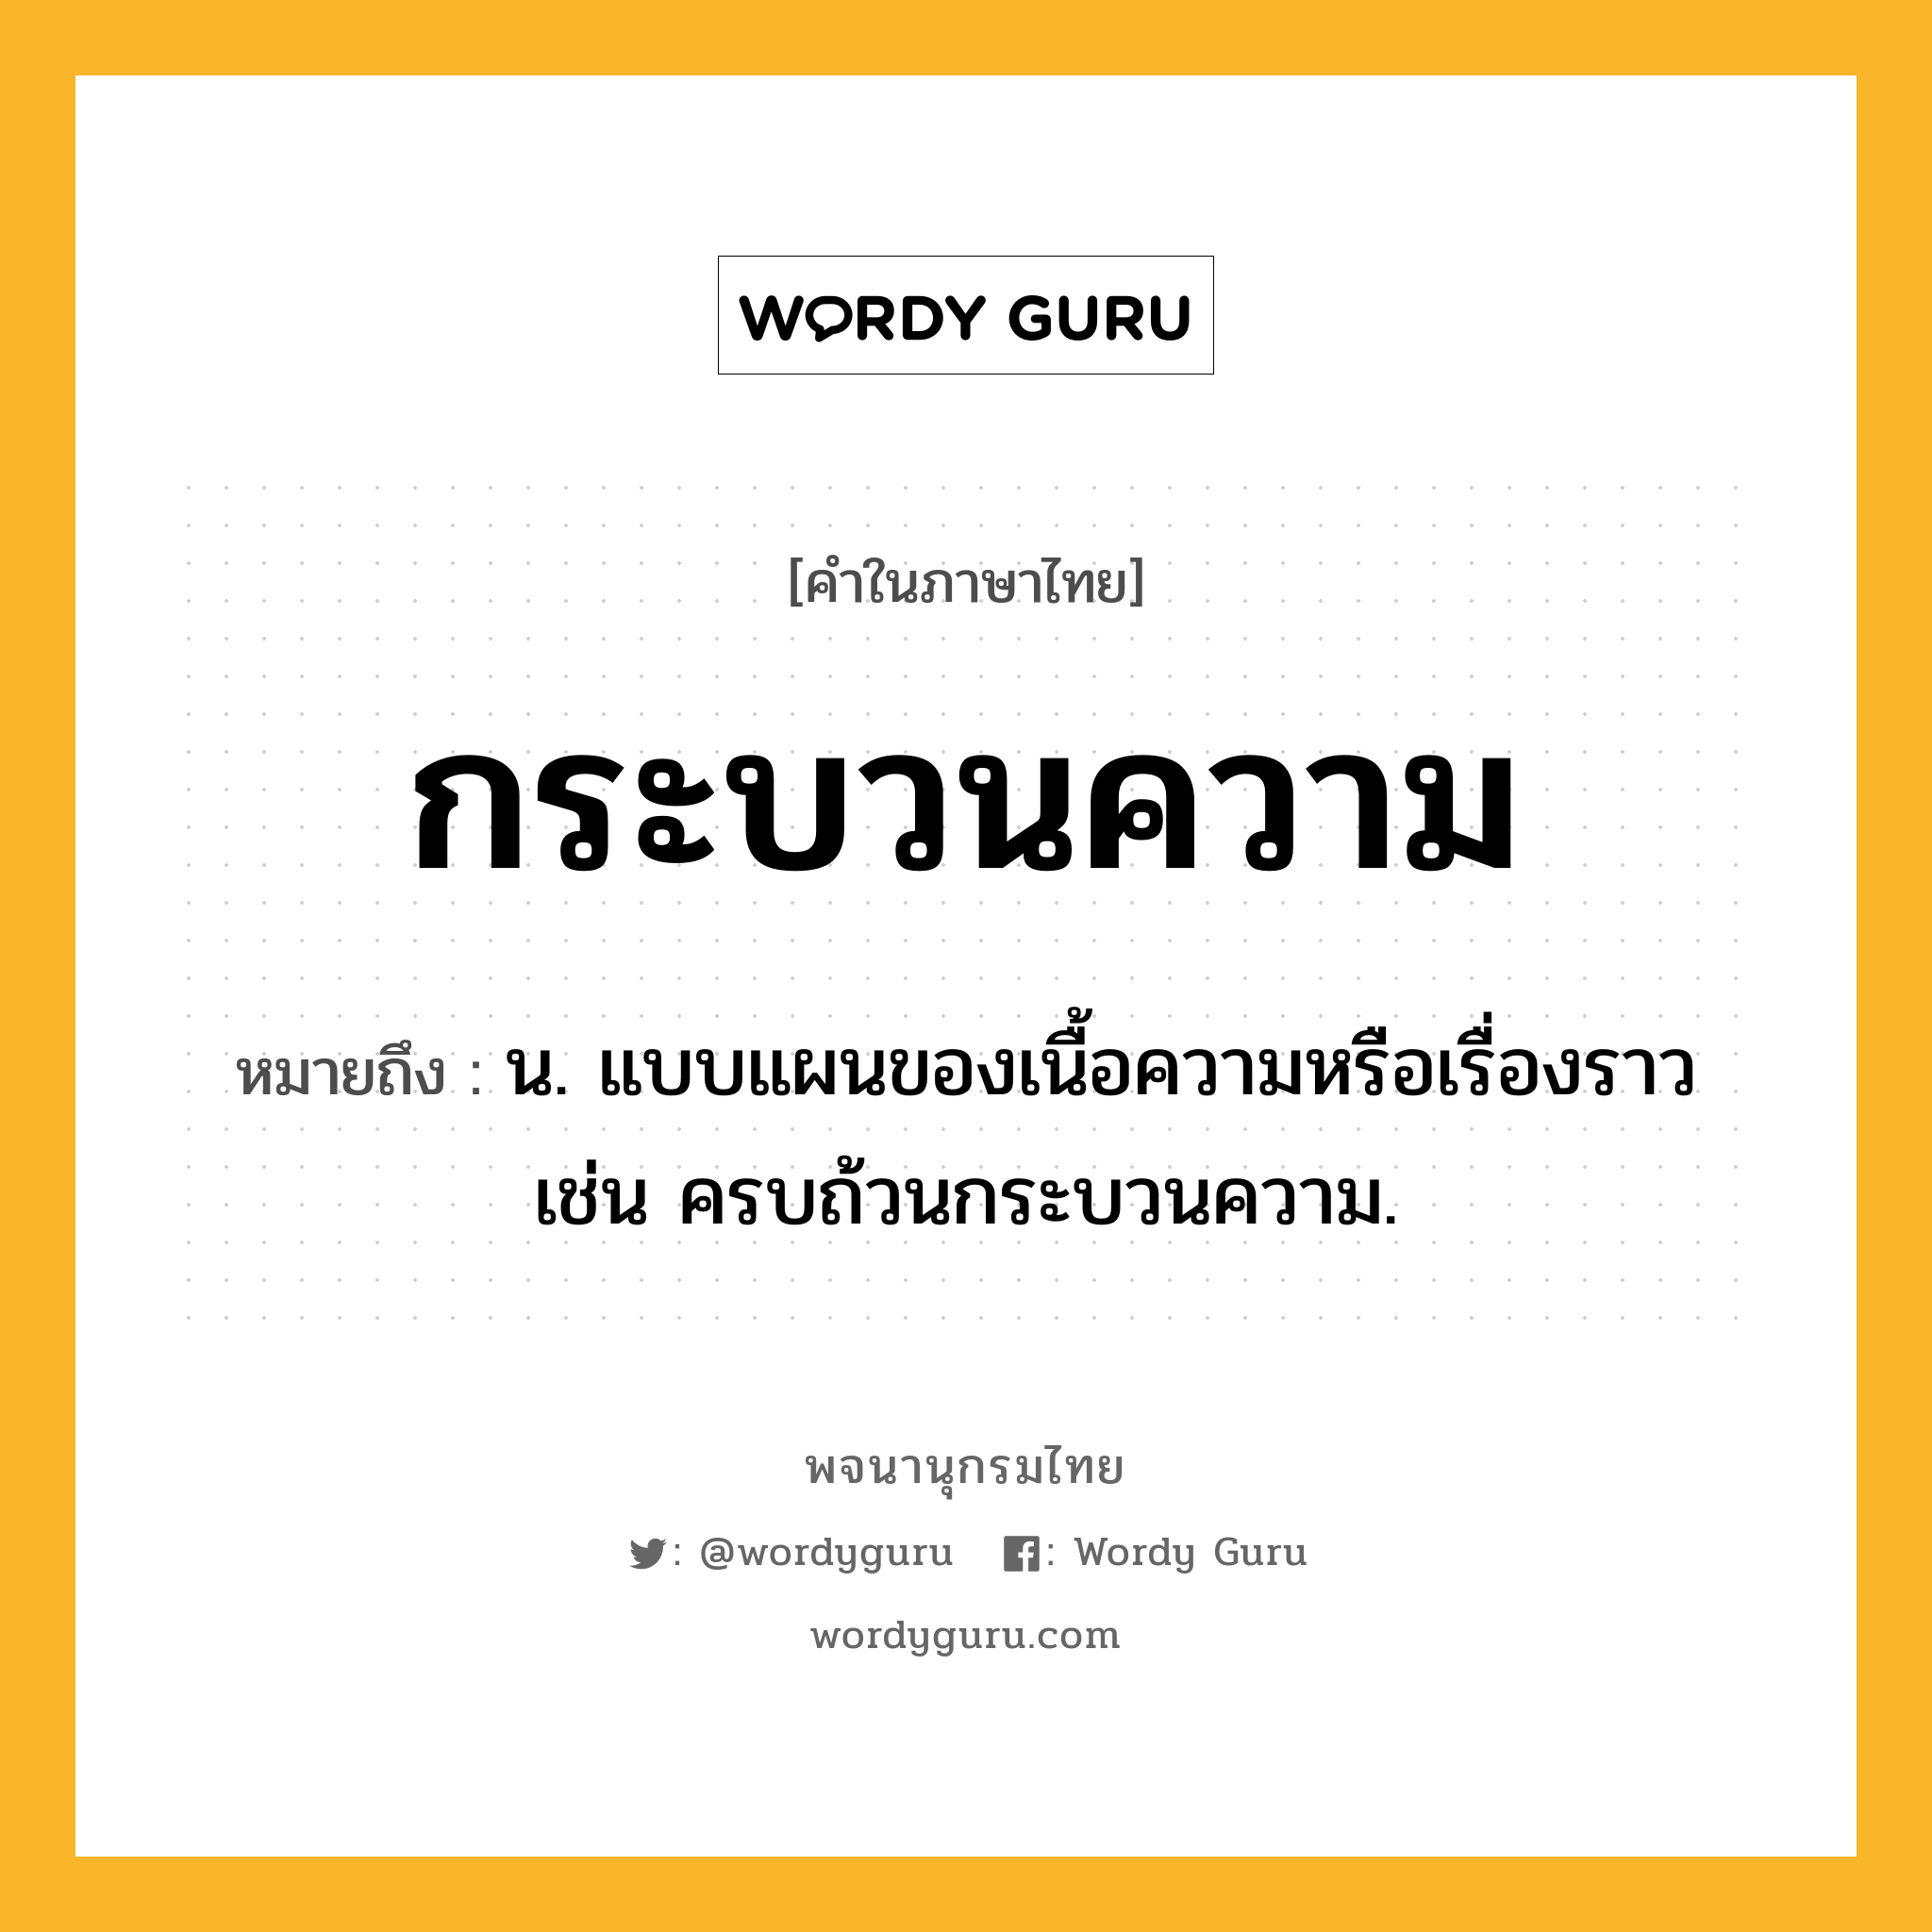 กระบวนความ หมายถึงอะไร?, คำในภาษาไทย กระบวนความ หมายถึง น. แบบแผนของเนื้อความหรือเรื่องราว เช่น ครบถ้วนกระบวนความ.